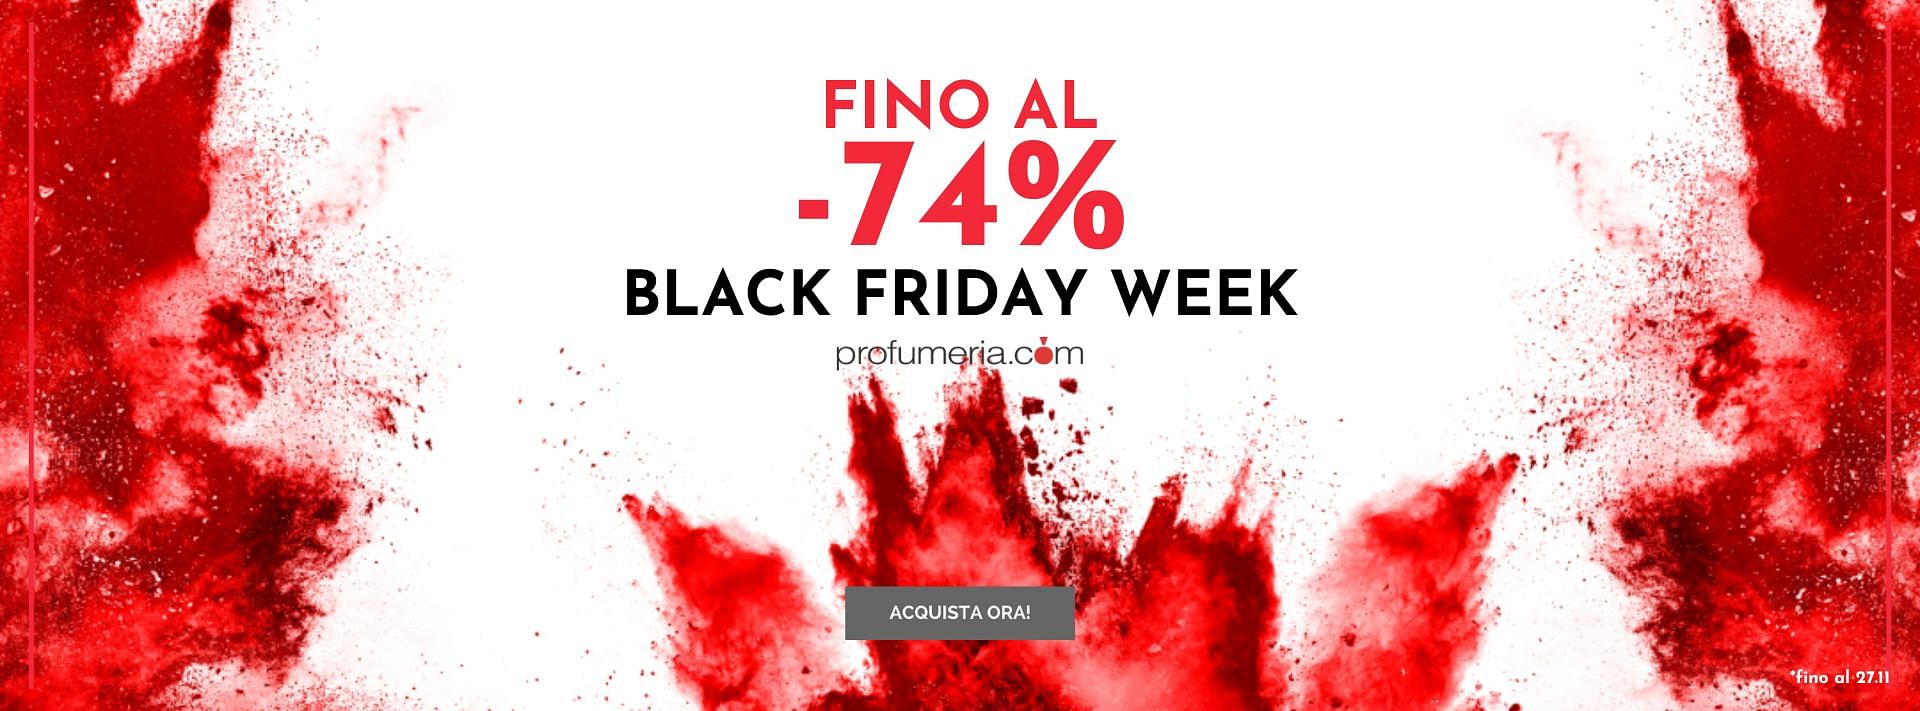 Discover the Black Friday discounts of Profumeria.com